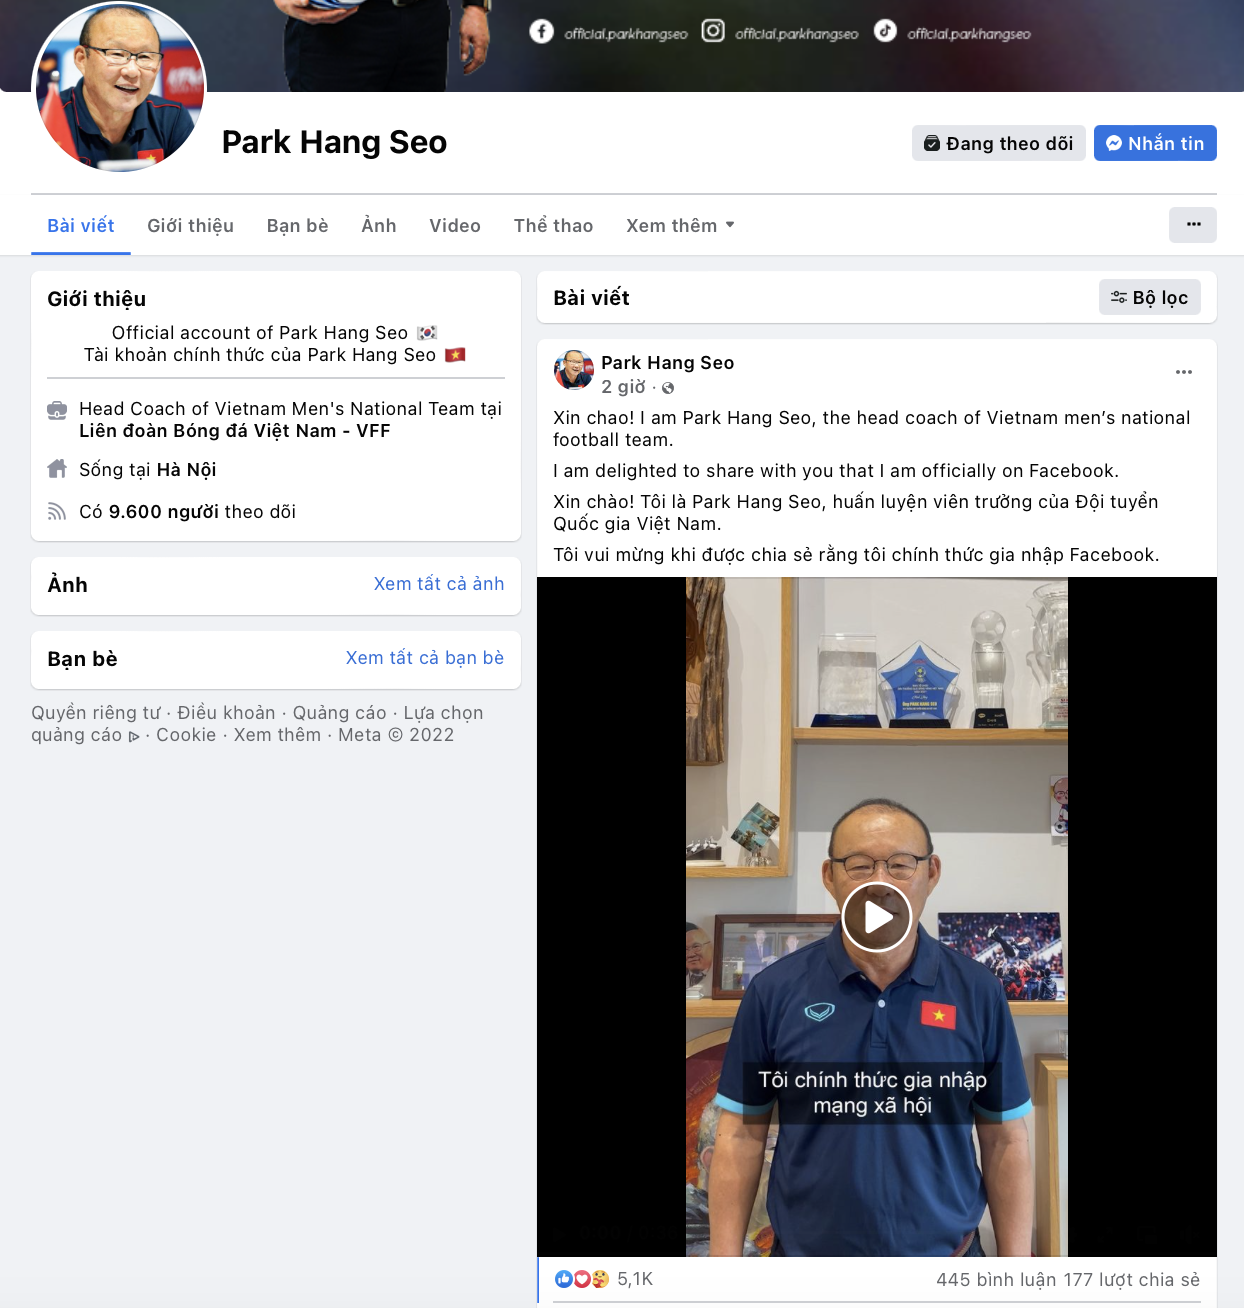 HLV Park Hang-seo không chỉ là một vị chiến lược gia xuất sắc mà còn là một người thân thiện và chân thành trên Facebook. Với những động thái bất ngờ của mình trên trang Facebook, anh đã thu hút được sự chú ý của hàng triệu người hâm mộ bóng đá trên toàn thế giới.